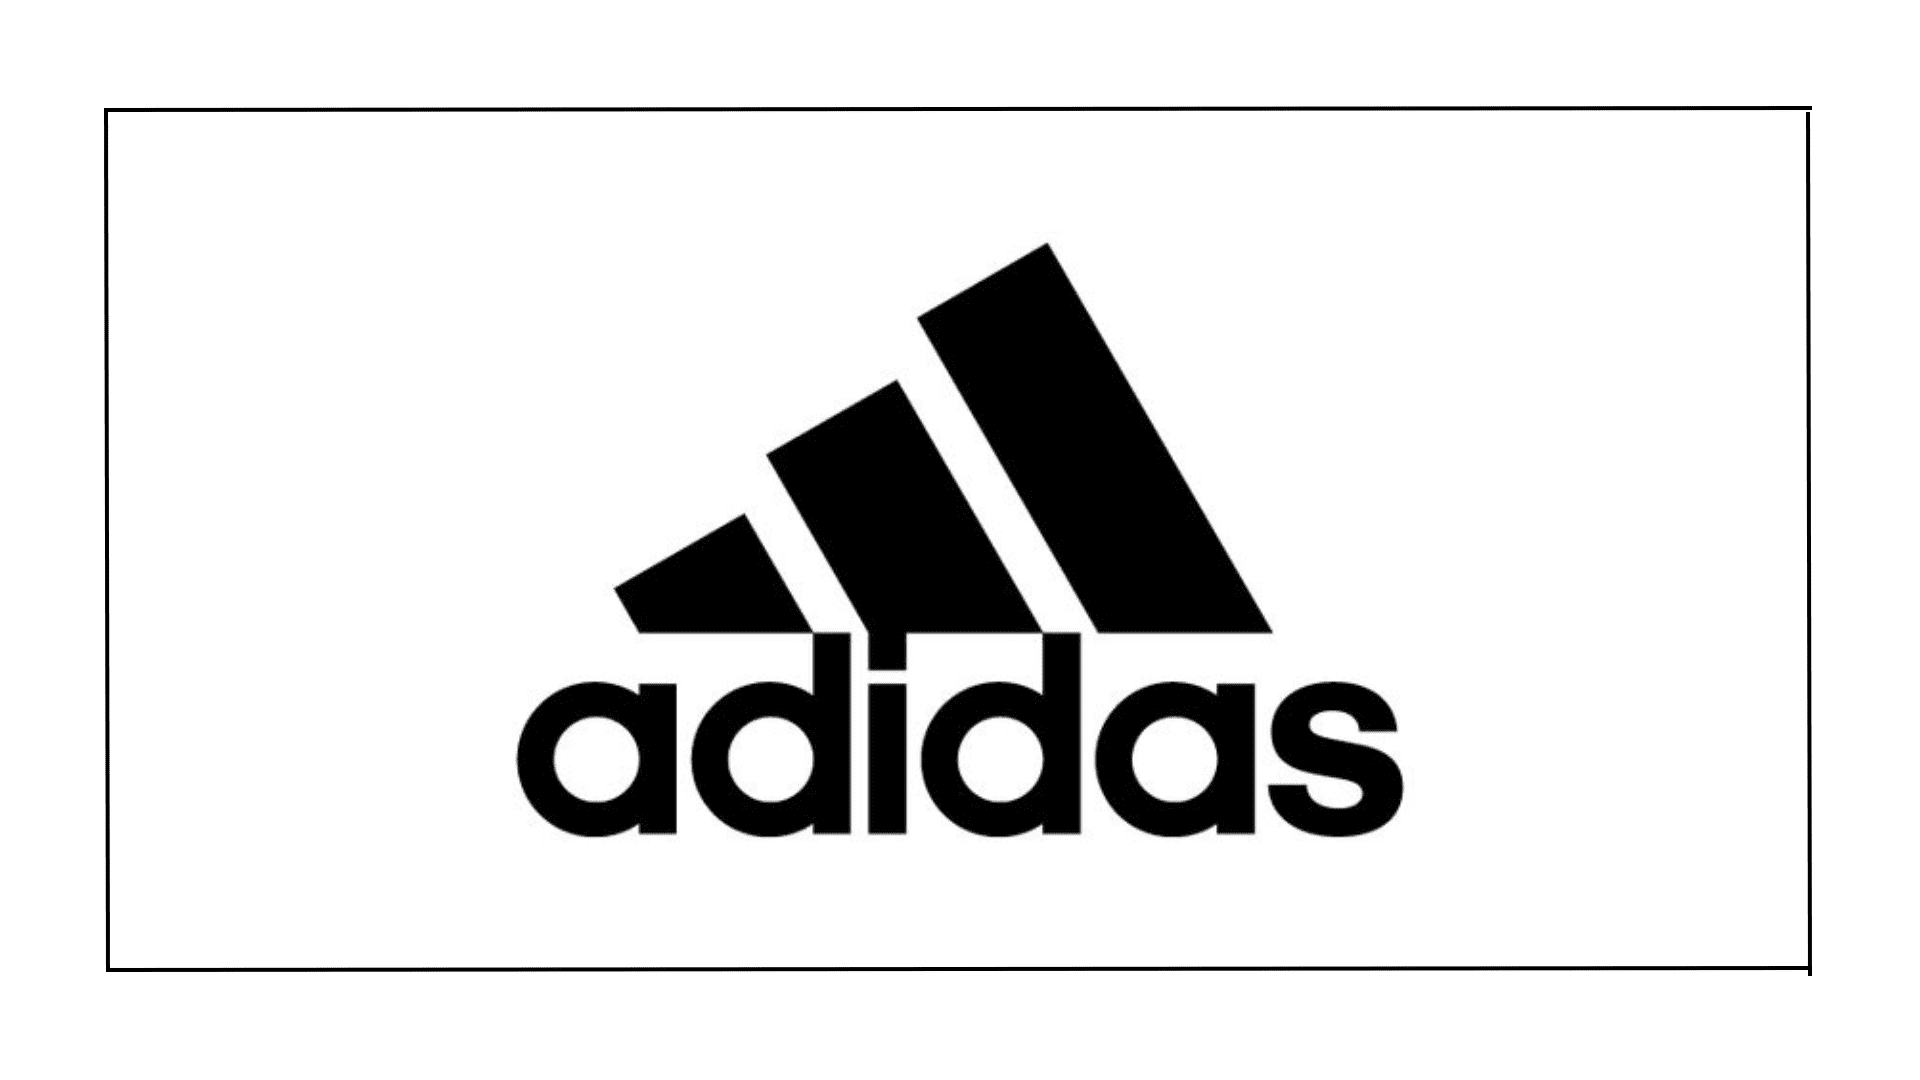 Marca Adidas